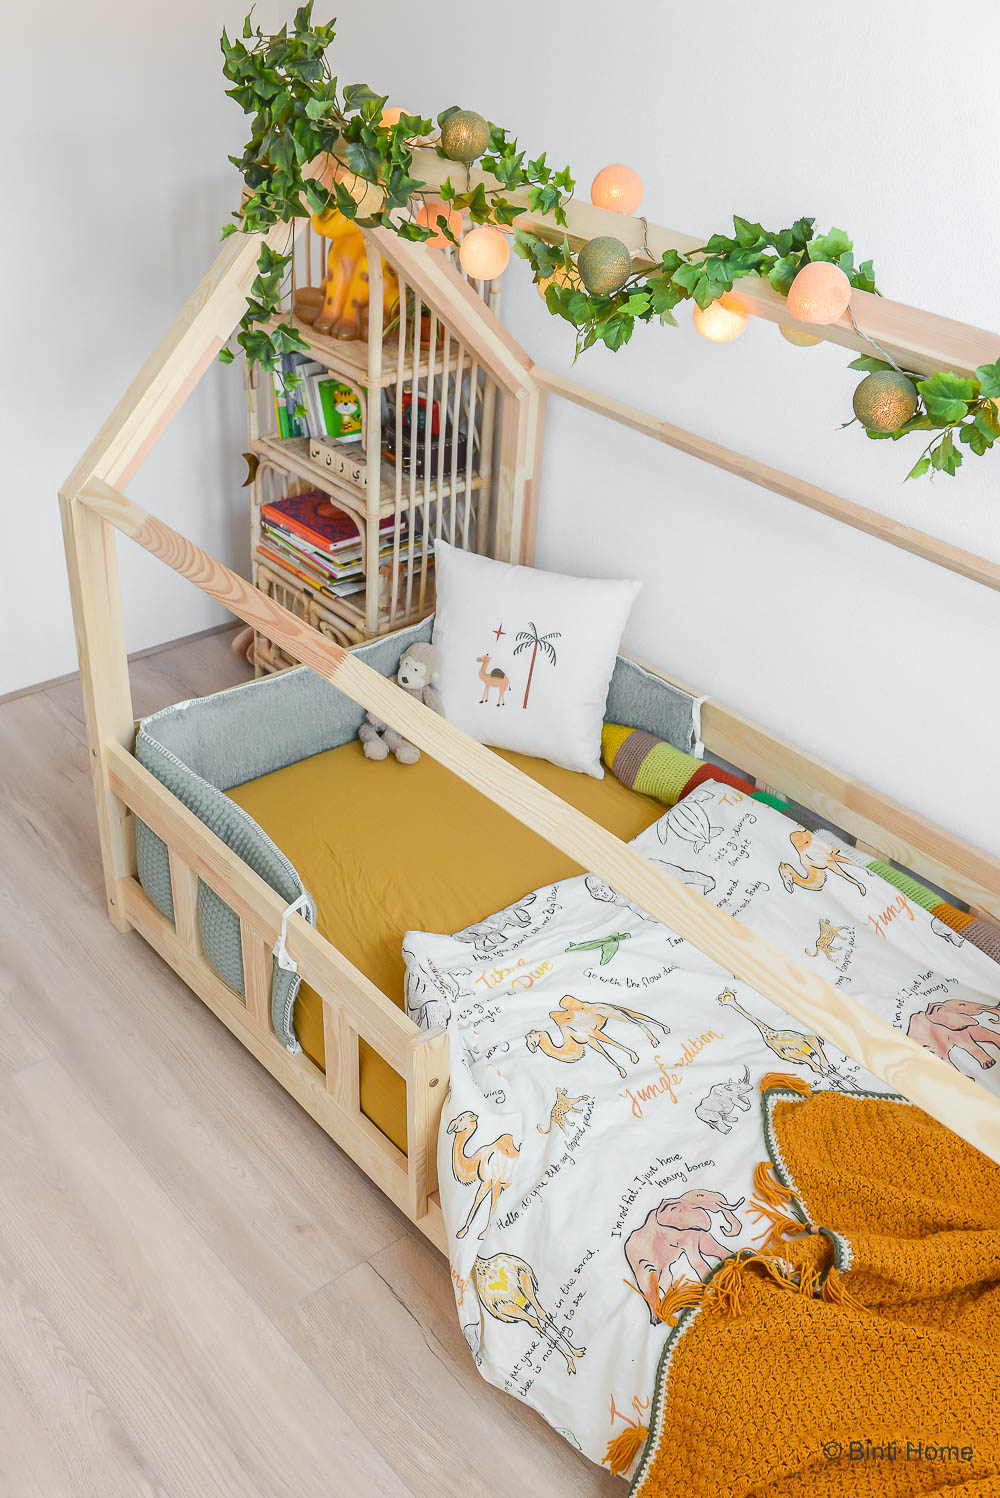 Glad bovenstaand Belofte De keuze voor een Montessori vloerbed voor onze peuter - VIDEO - Binti Home  | Interieurontwerpstudio & inspiratie blog